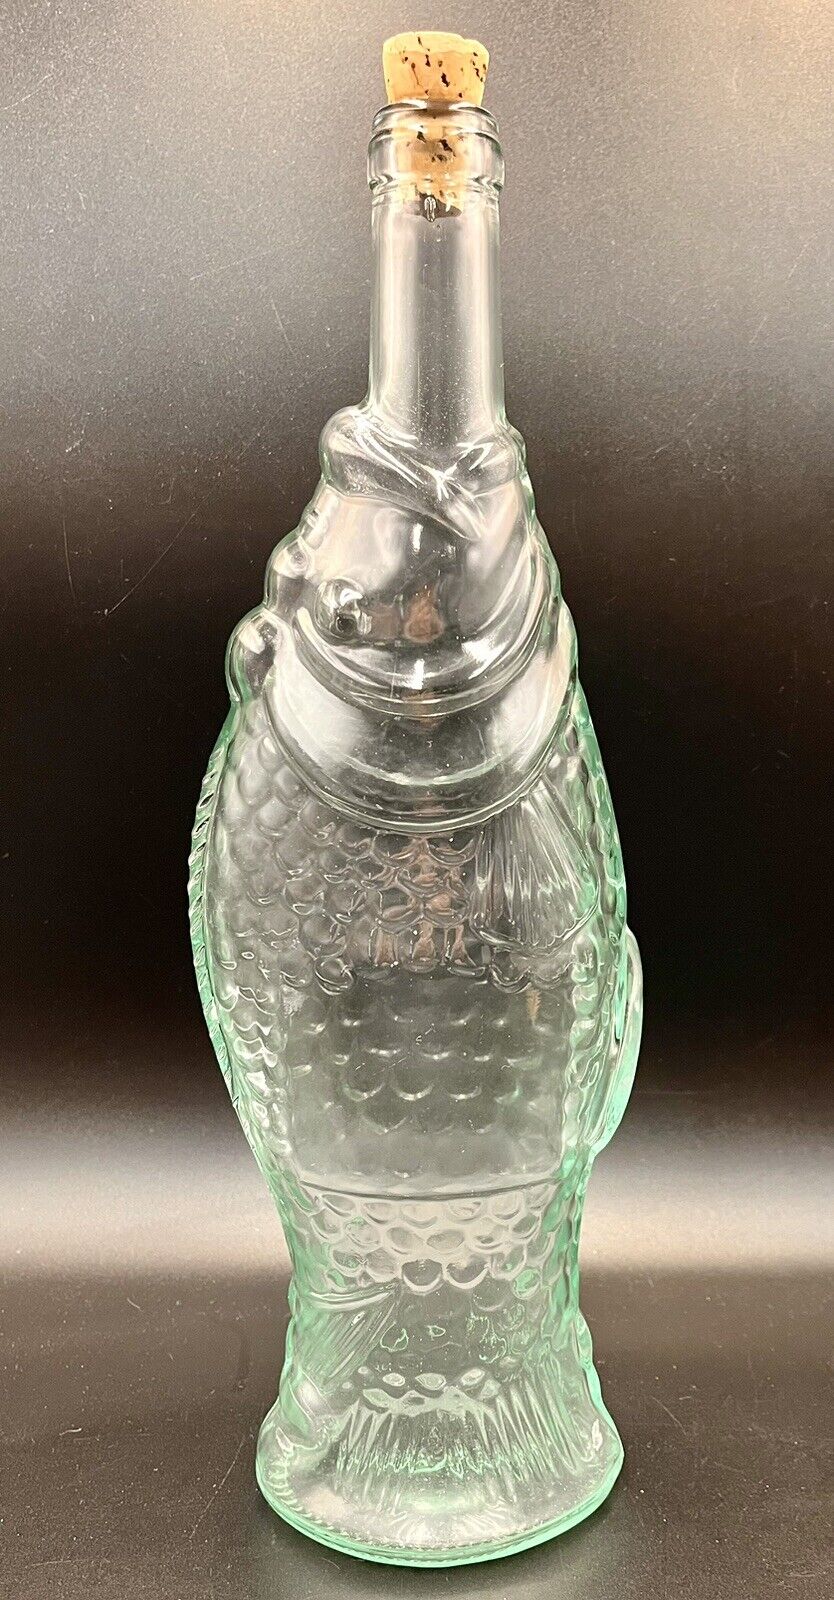 VTG Aqua Glass Fish Shaped Wine Bottle 16oz Corked Decanter Vase Italy Nautical